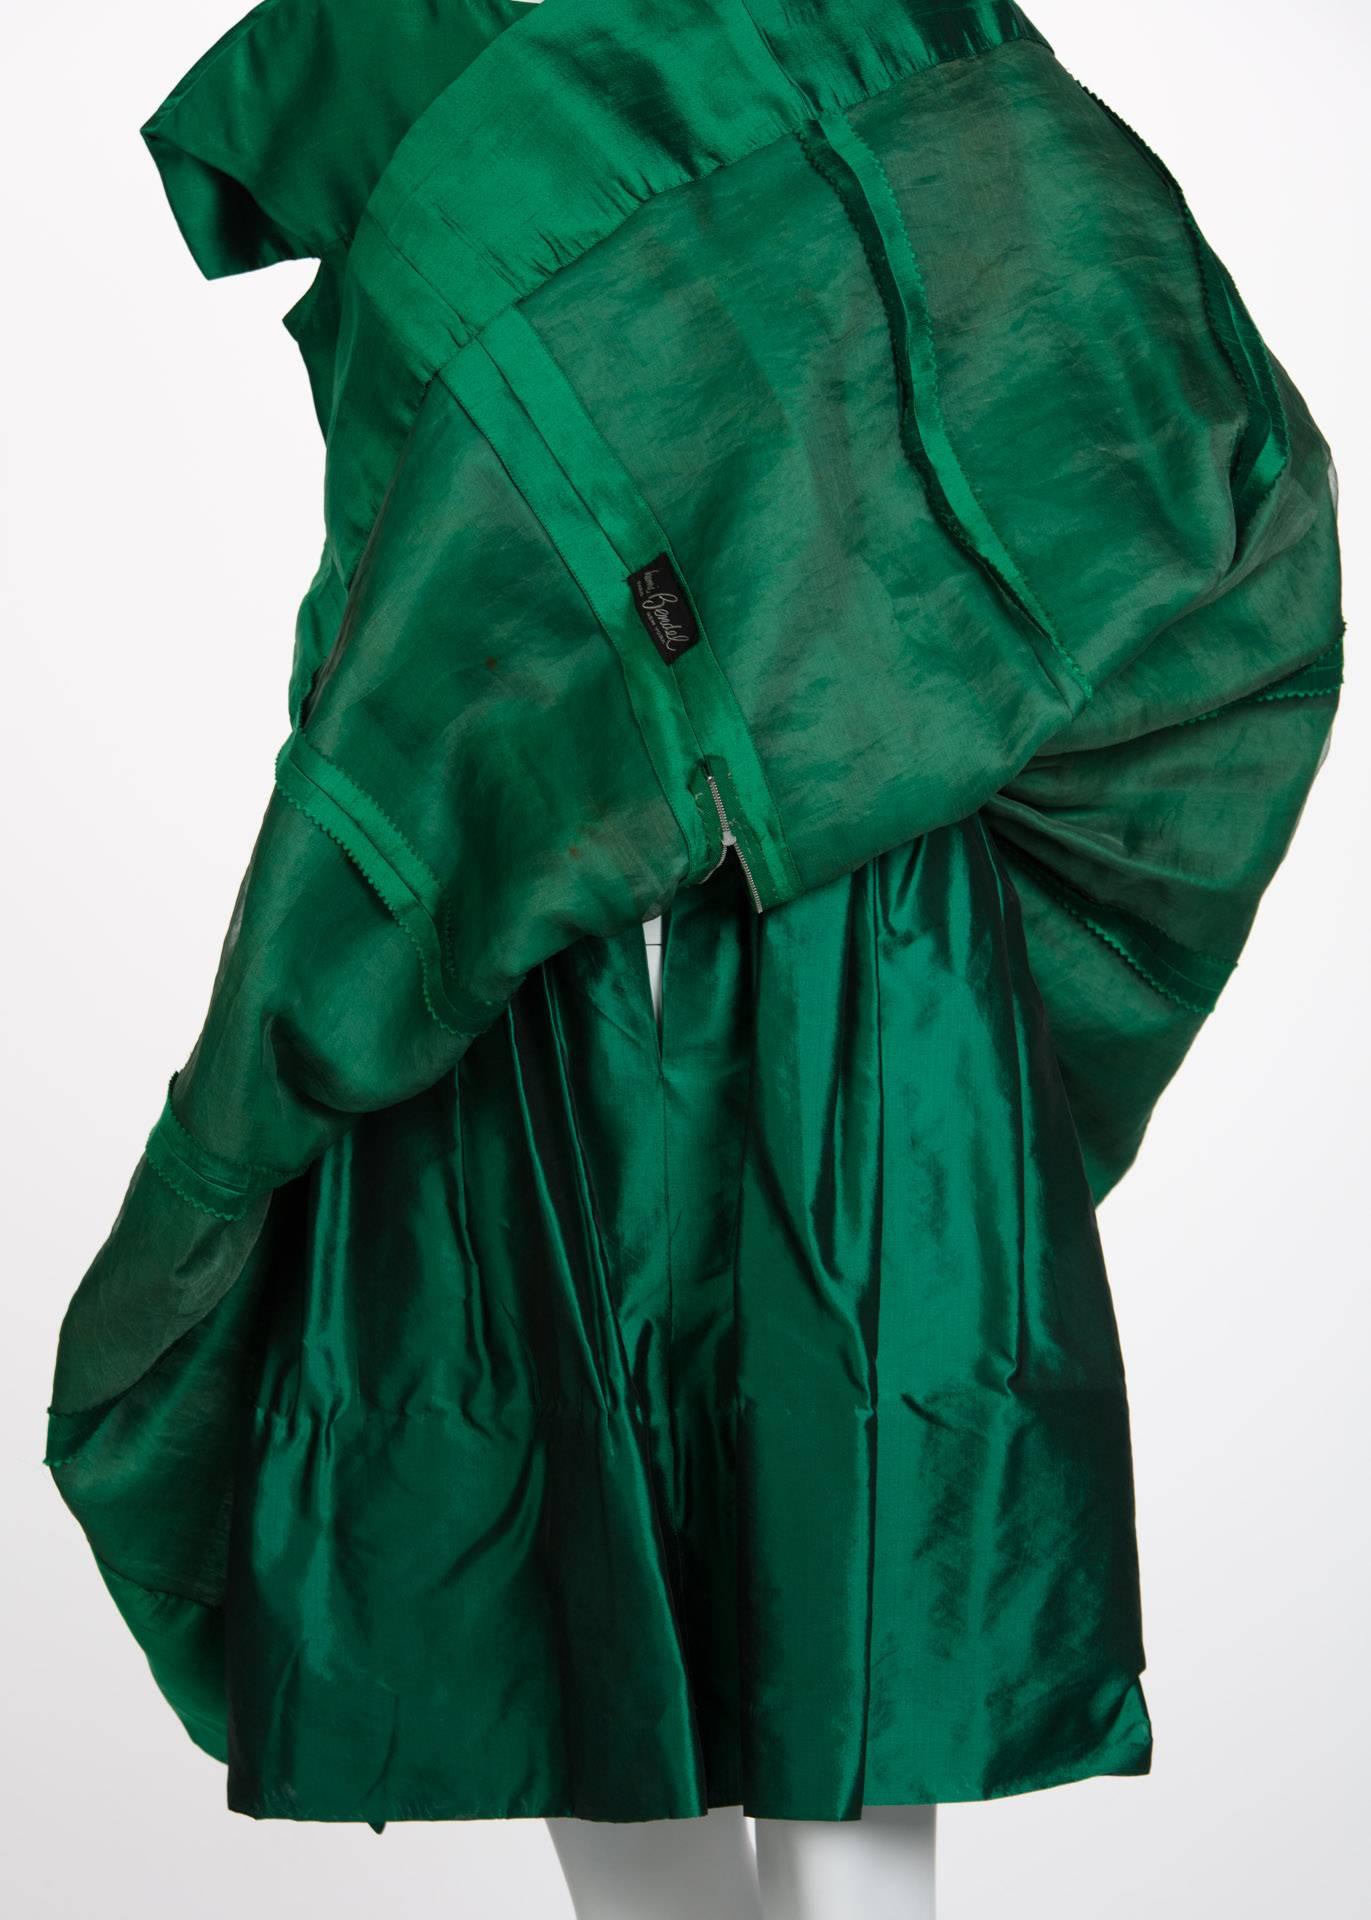 1950s Henri Bendel Emerald Green Silk Belted Full Skirt Cocktail Dress 3